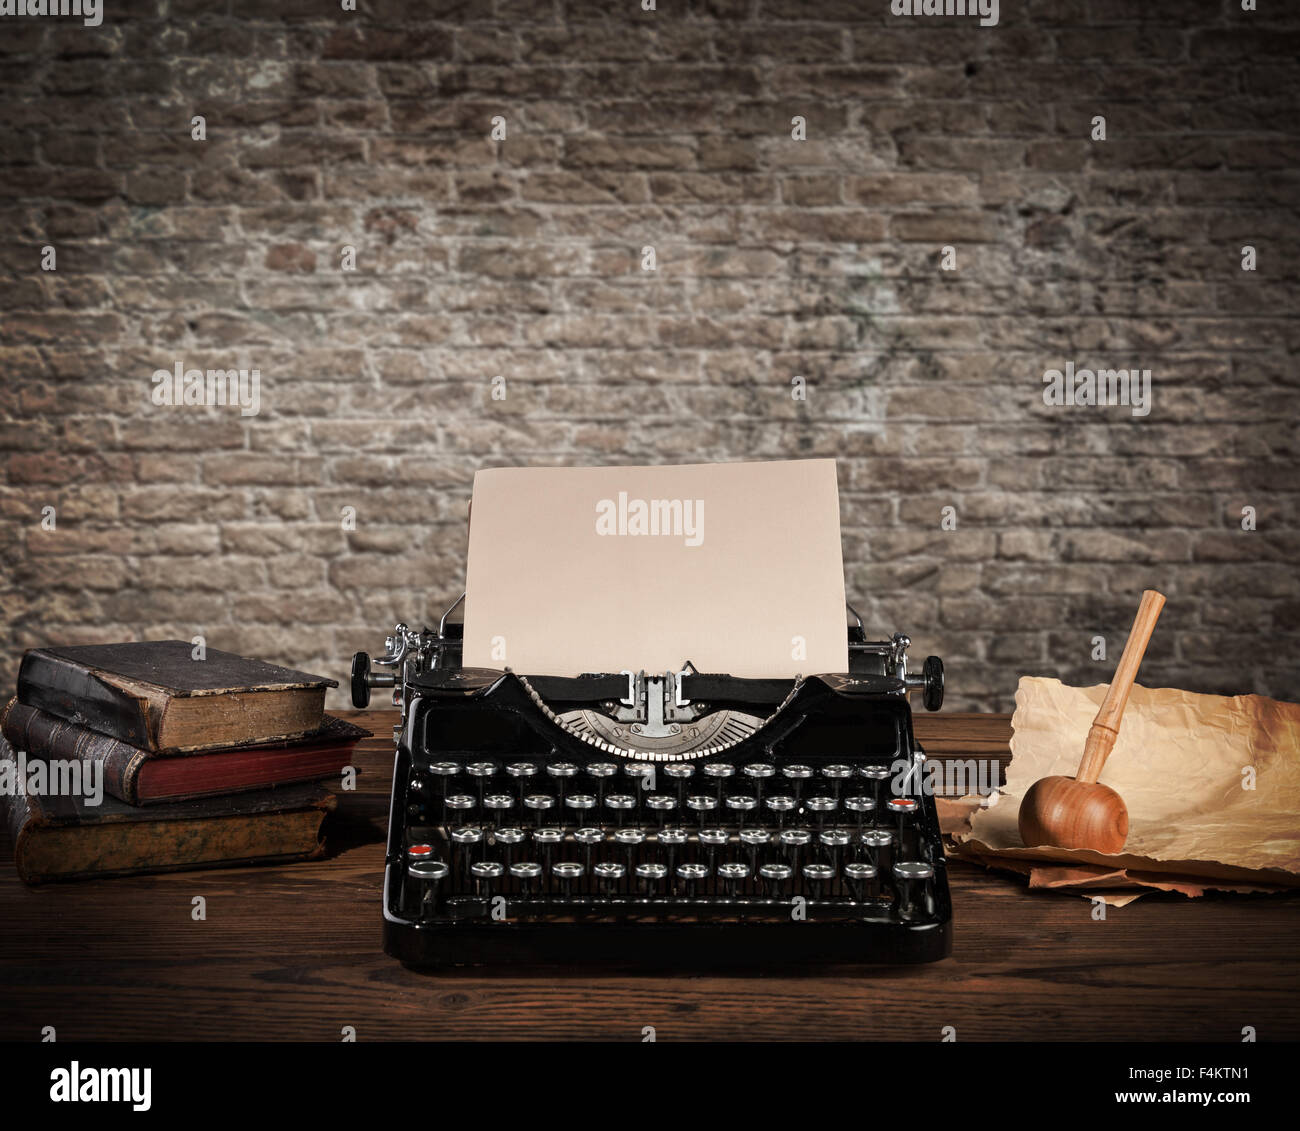 Machine à écrire antique avec grungy brick wall Banque D'Images